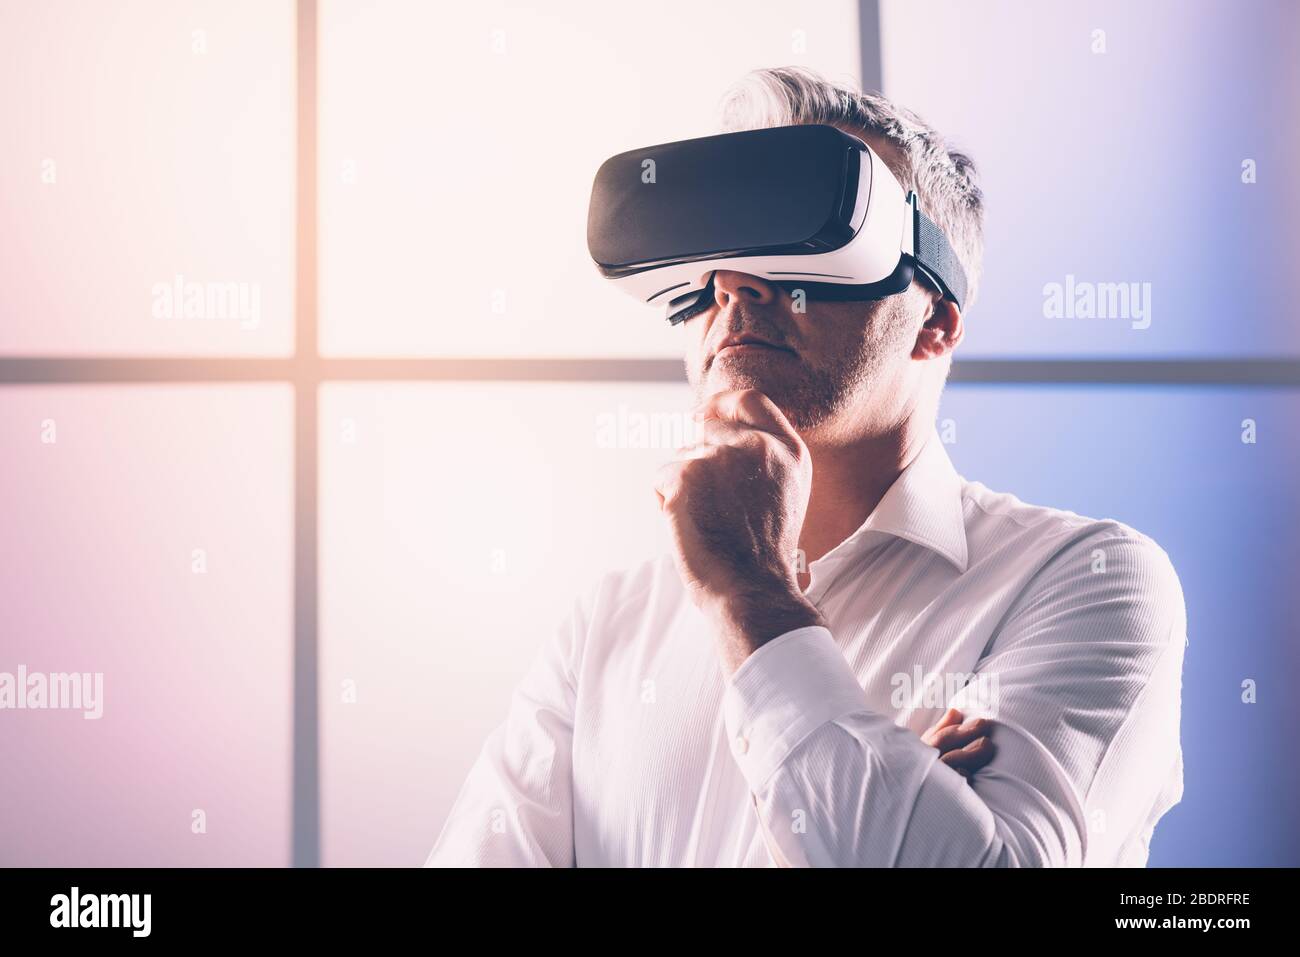 Homme d'âge mûr connaissant la réalité virtuelle, il porte un casque VR, une technologie et un concept d'innovation Banque D'Images